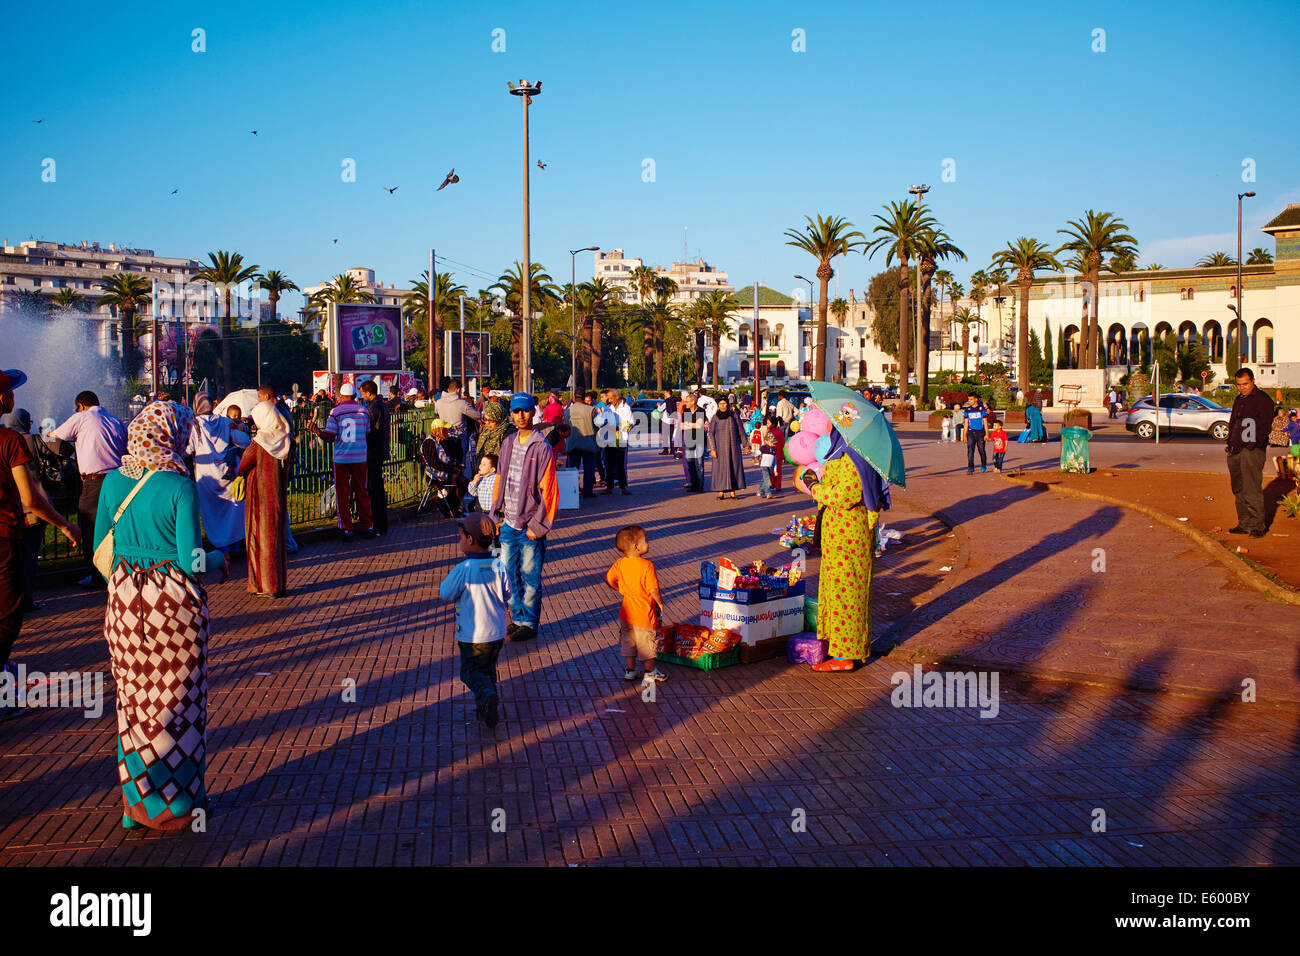 Morocco, Casablanca, Mohammed V square Stock Photo